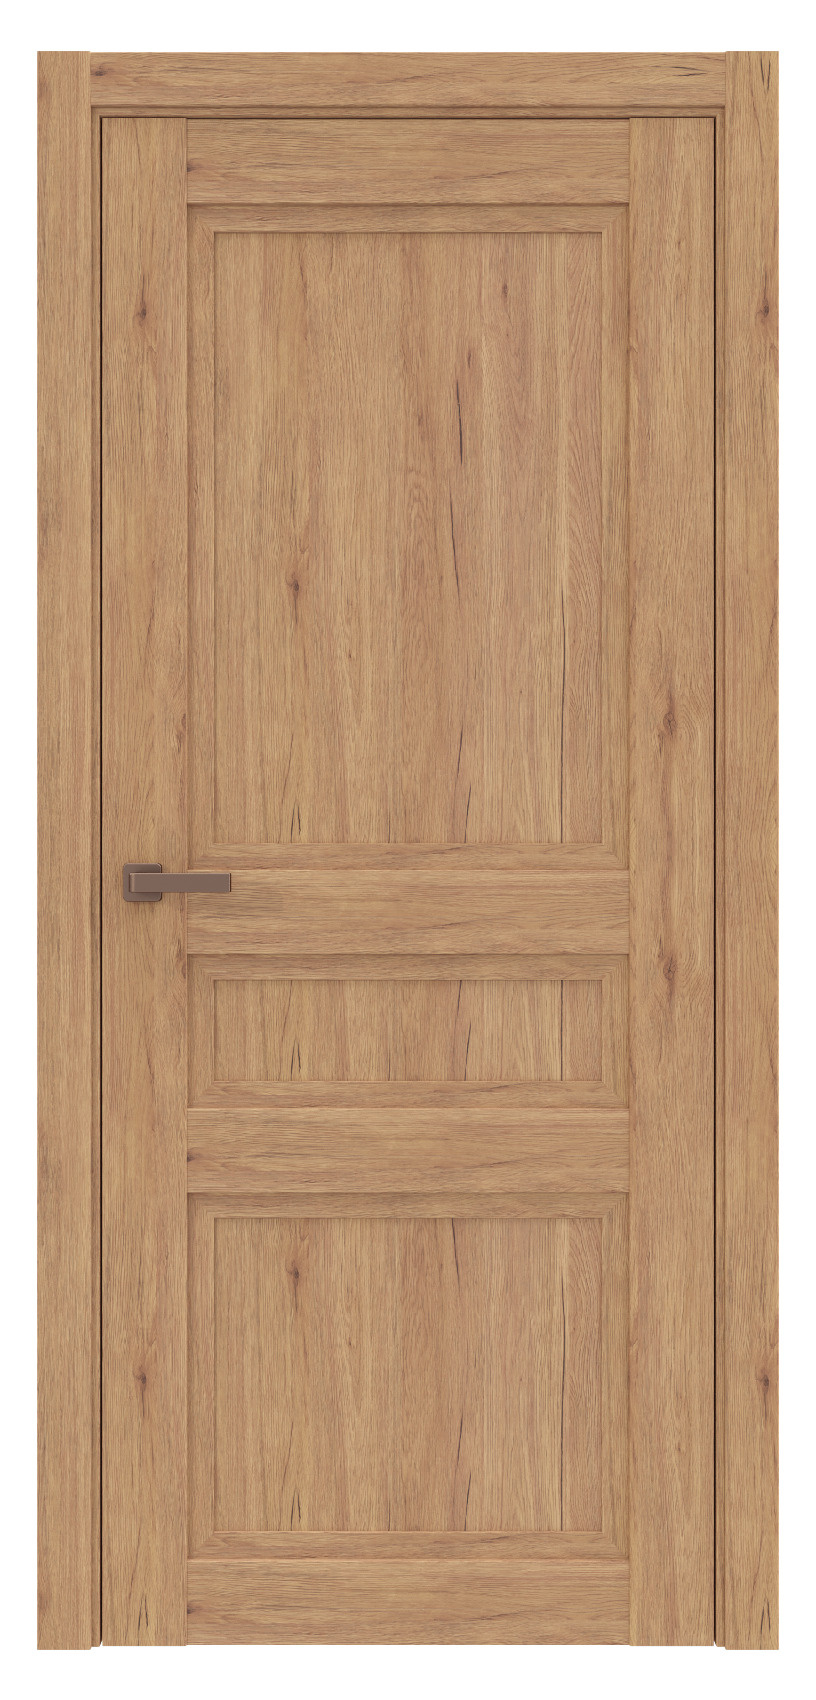 Questdoors Межкомнатная дверь QPS3, арт. 17555 - фото №1